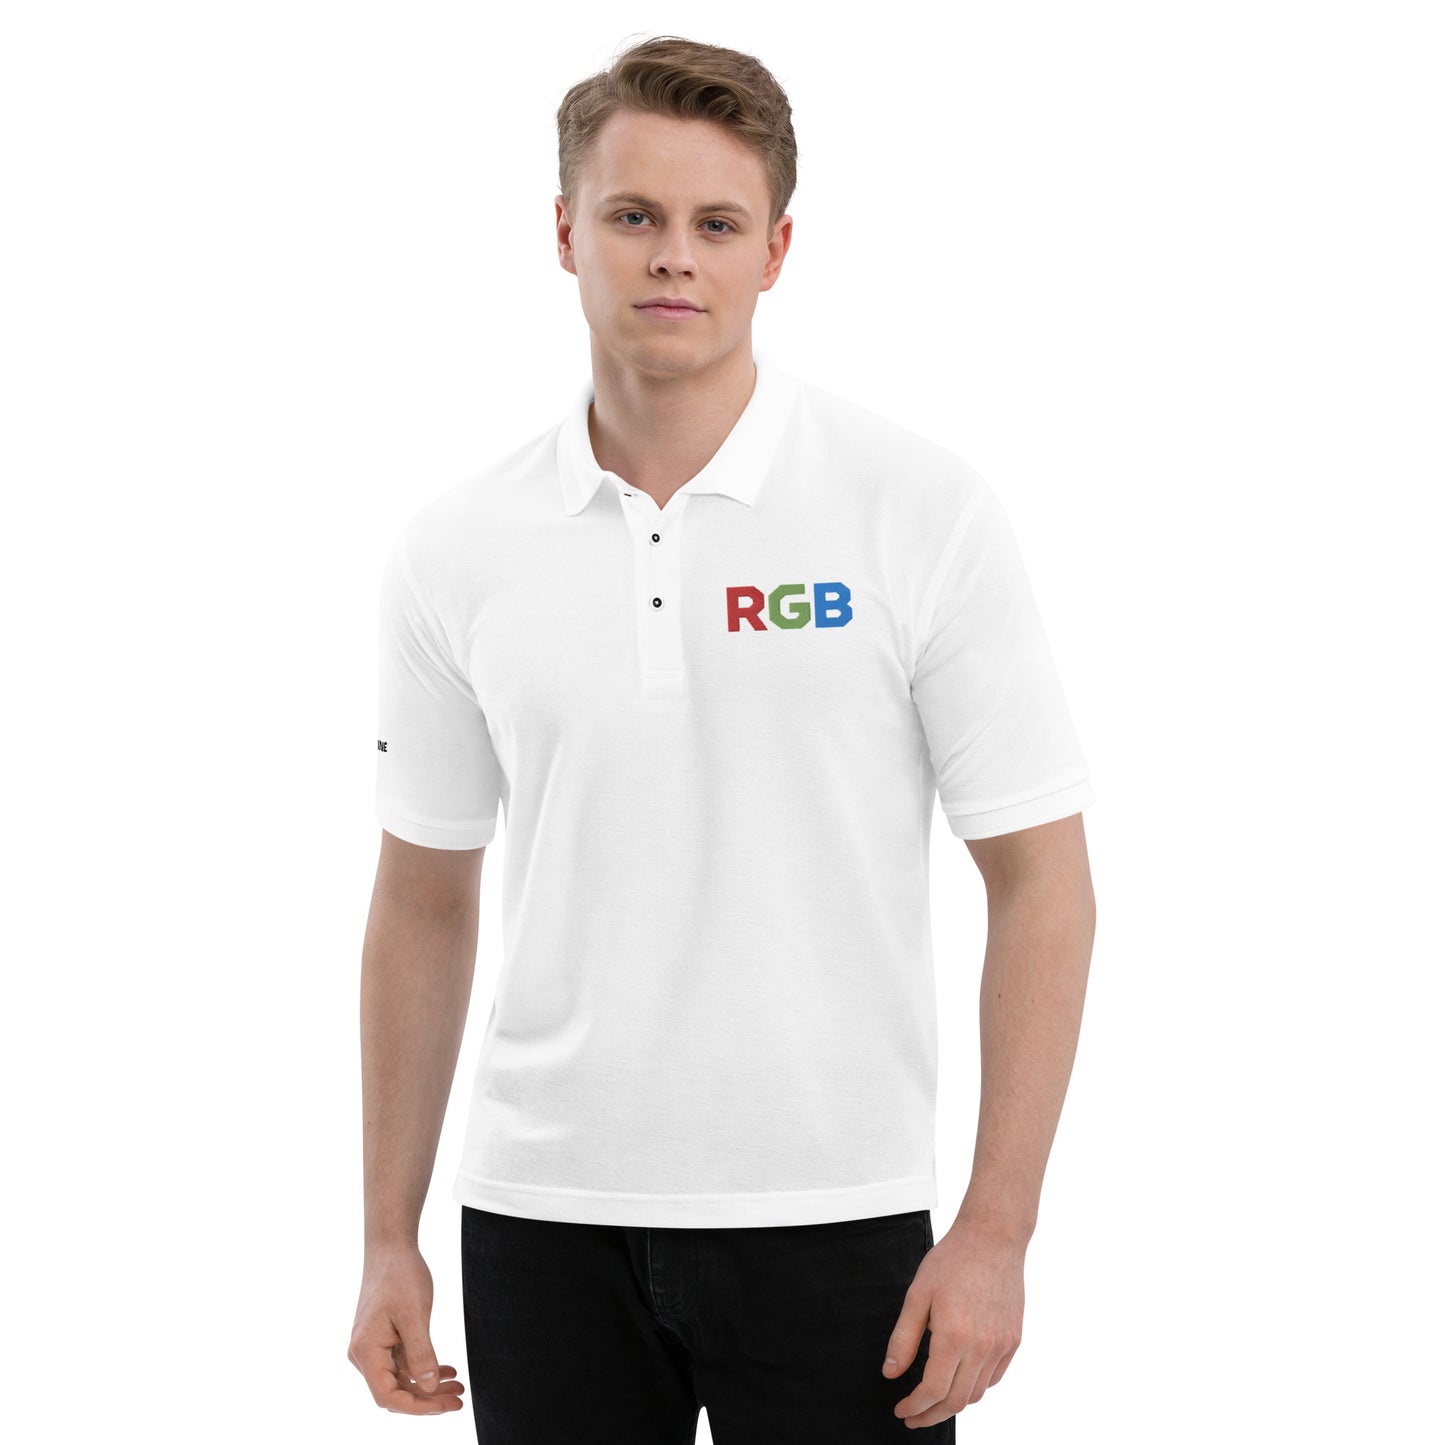 RGB Embroidered Men's Premium Polo